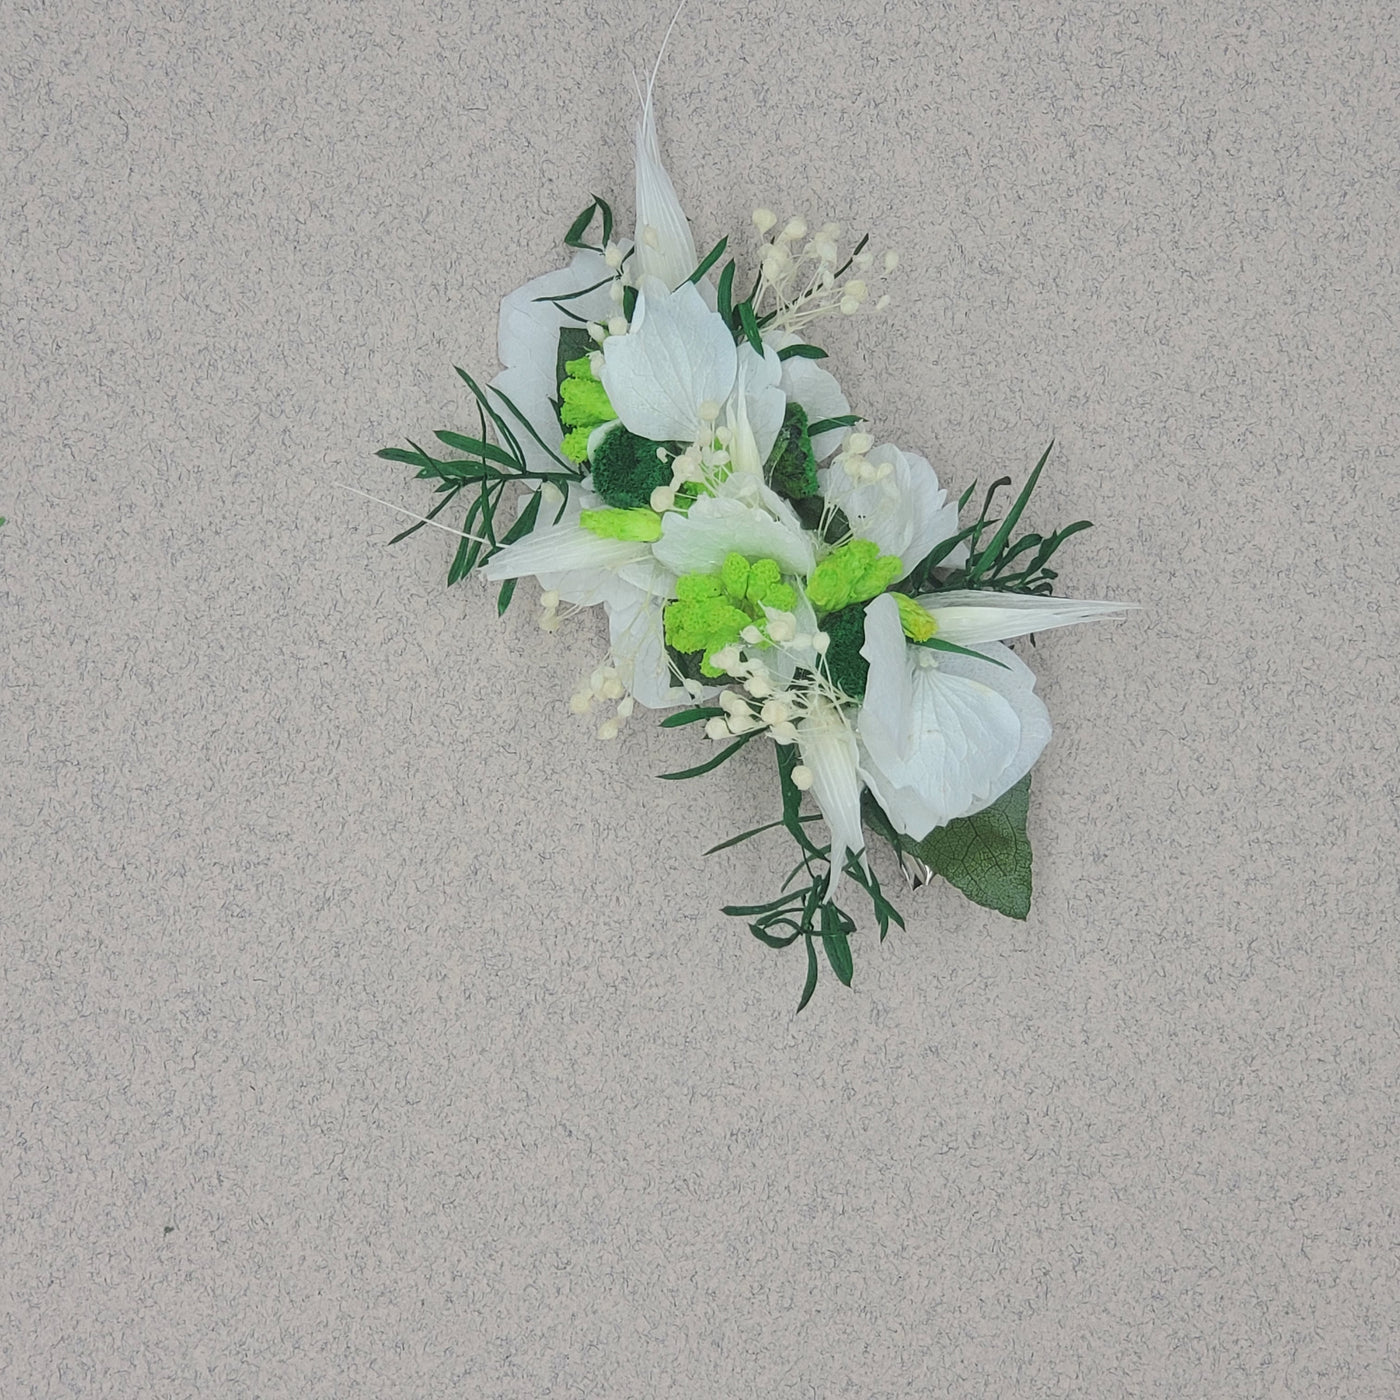 Barrette en fleurs stabilisées éternelles blanche & verte "Parc Monceau" : ATELIERS OUCHAMP